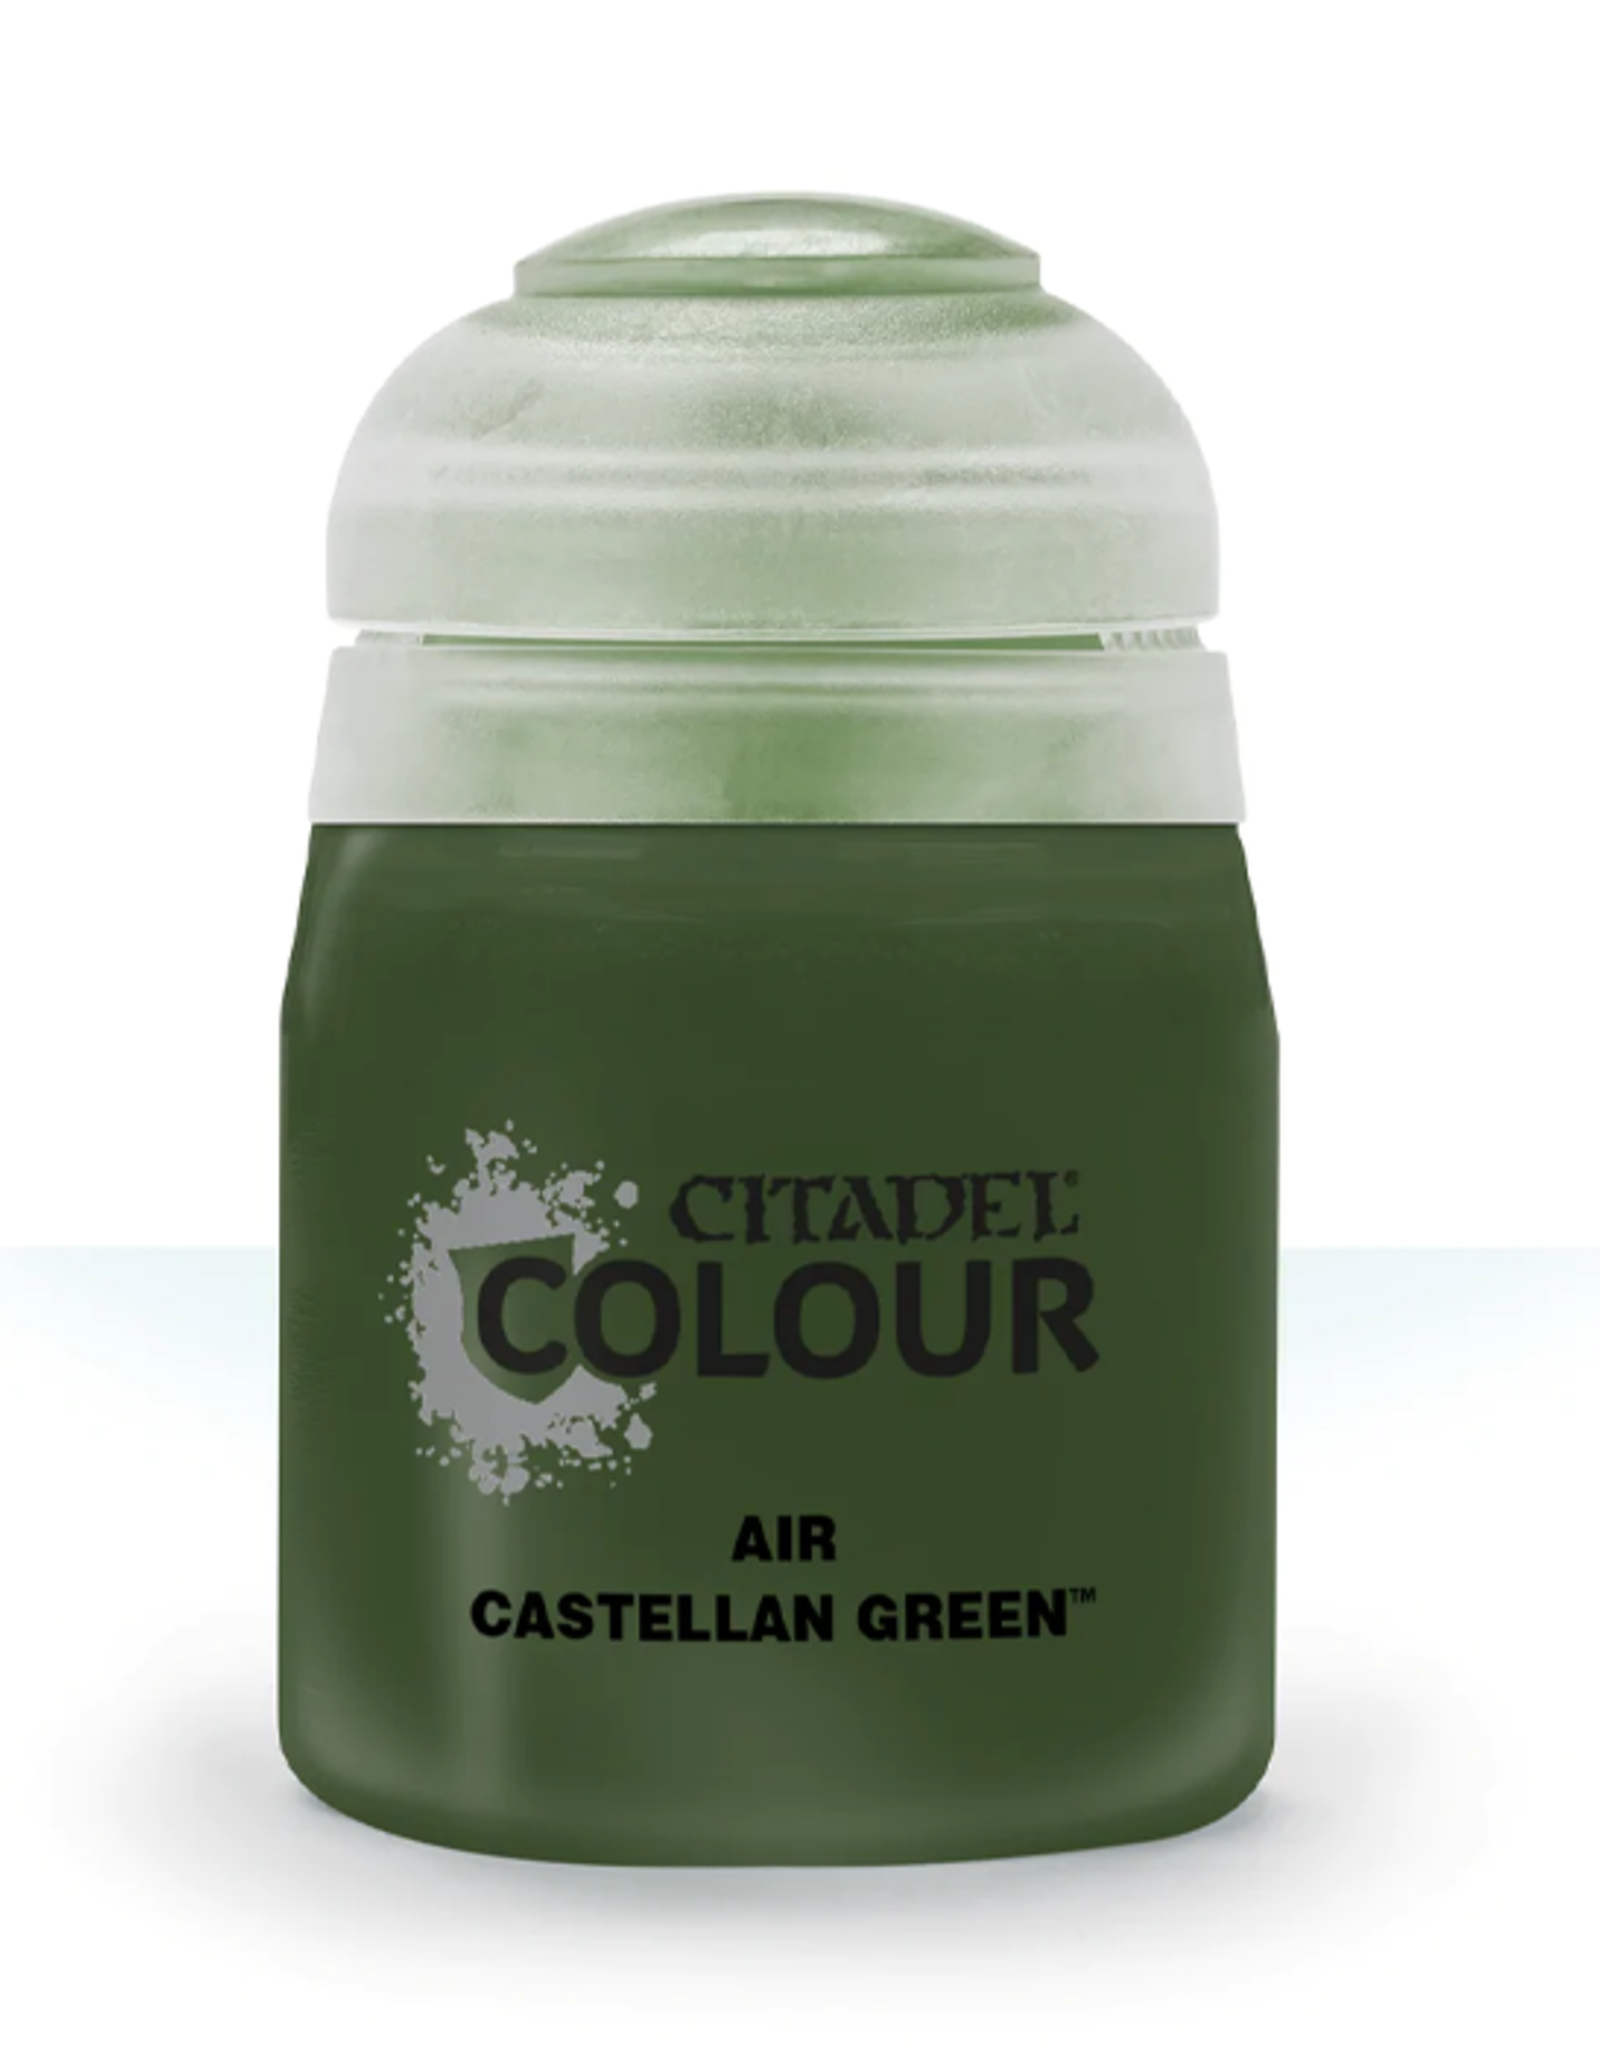 Citadel Citadel Colour: Air - Castellan Green